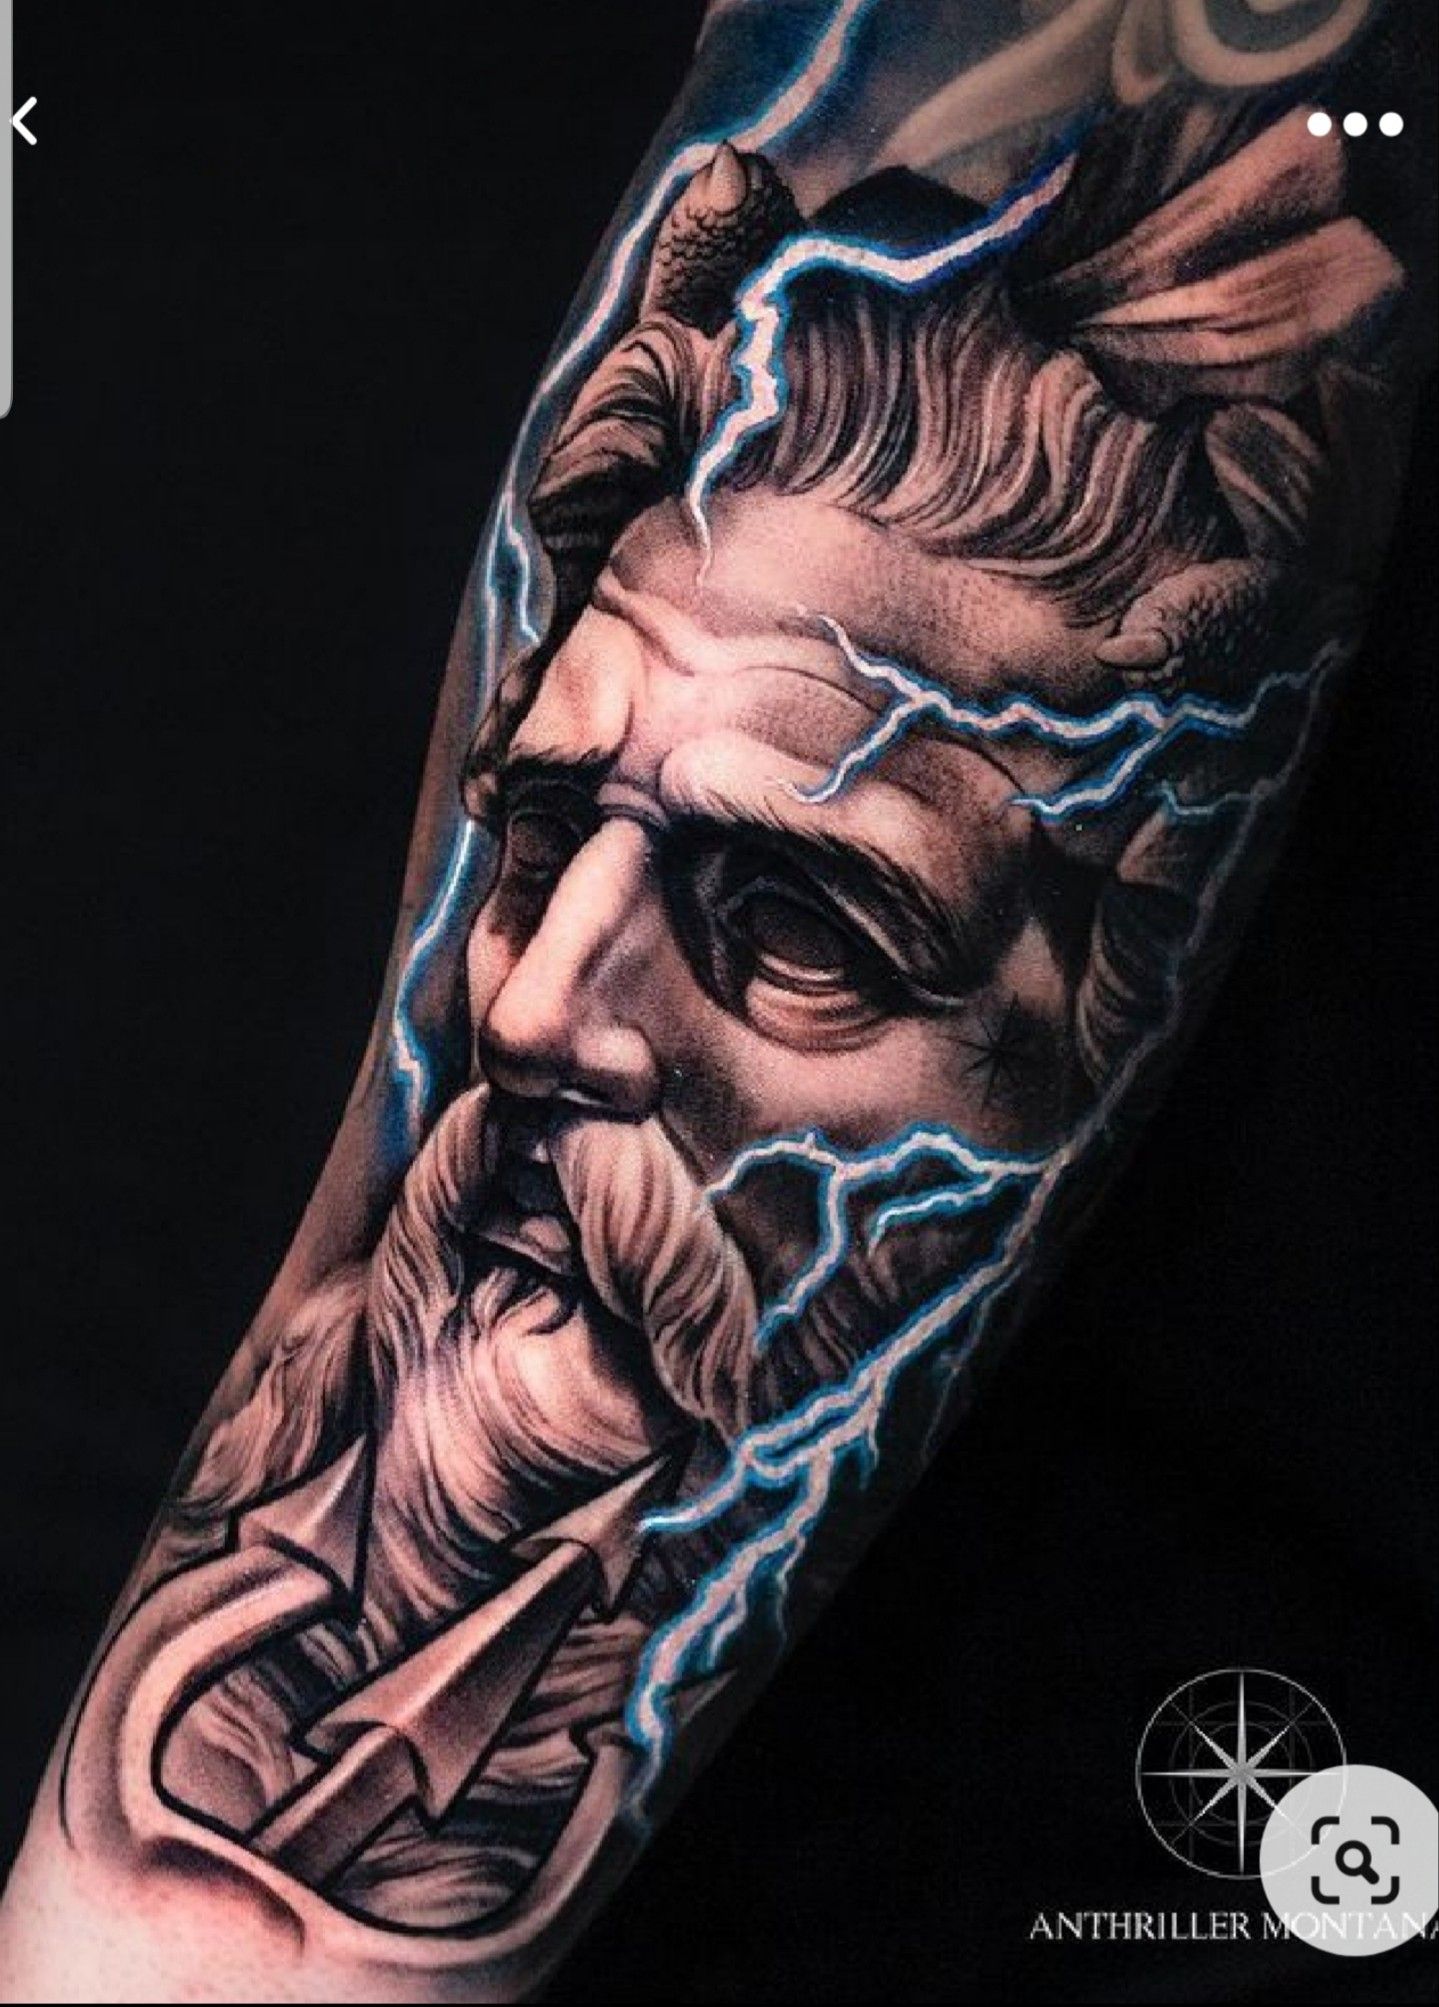 Significado del tatuaje de Zeus | BlendUp